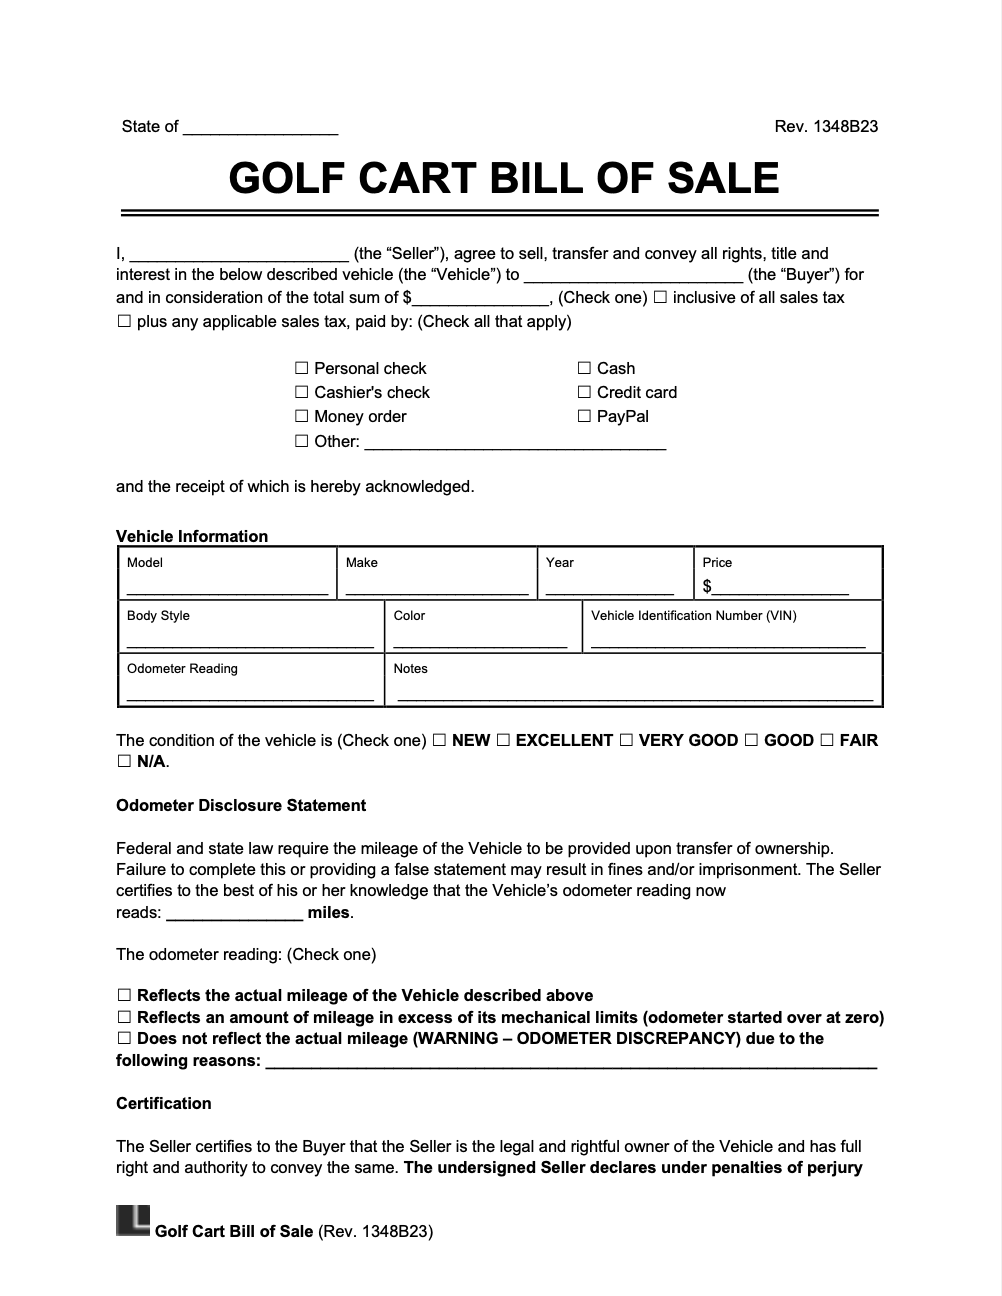 Golf Cart Bill of Sale screenshot